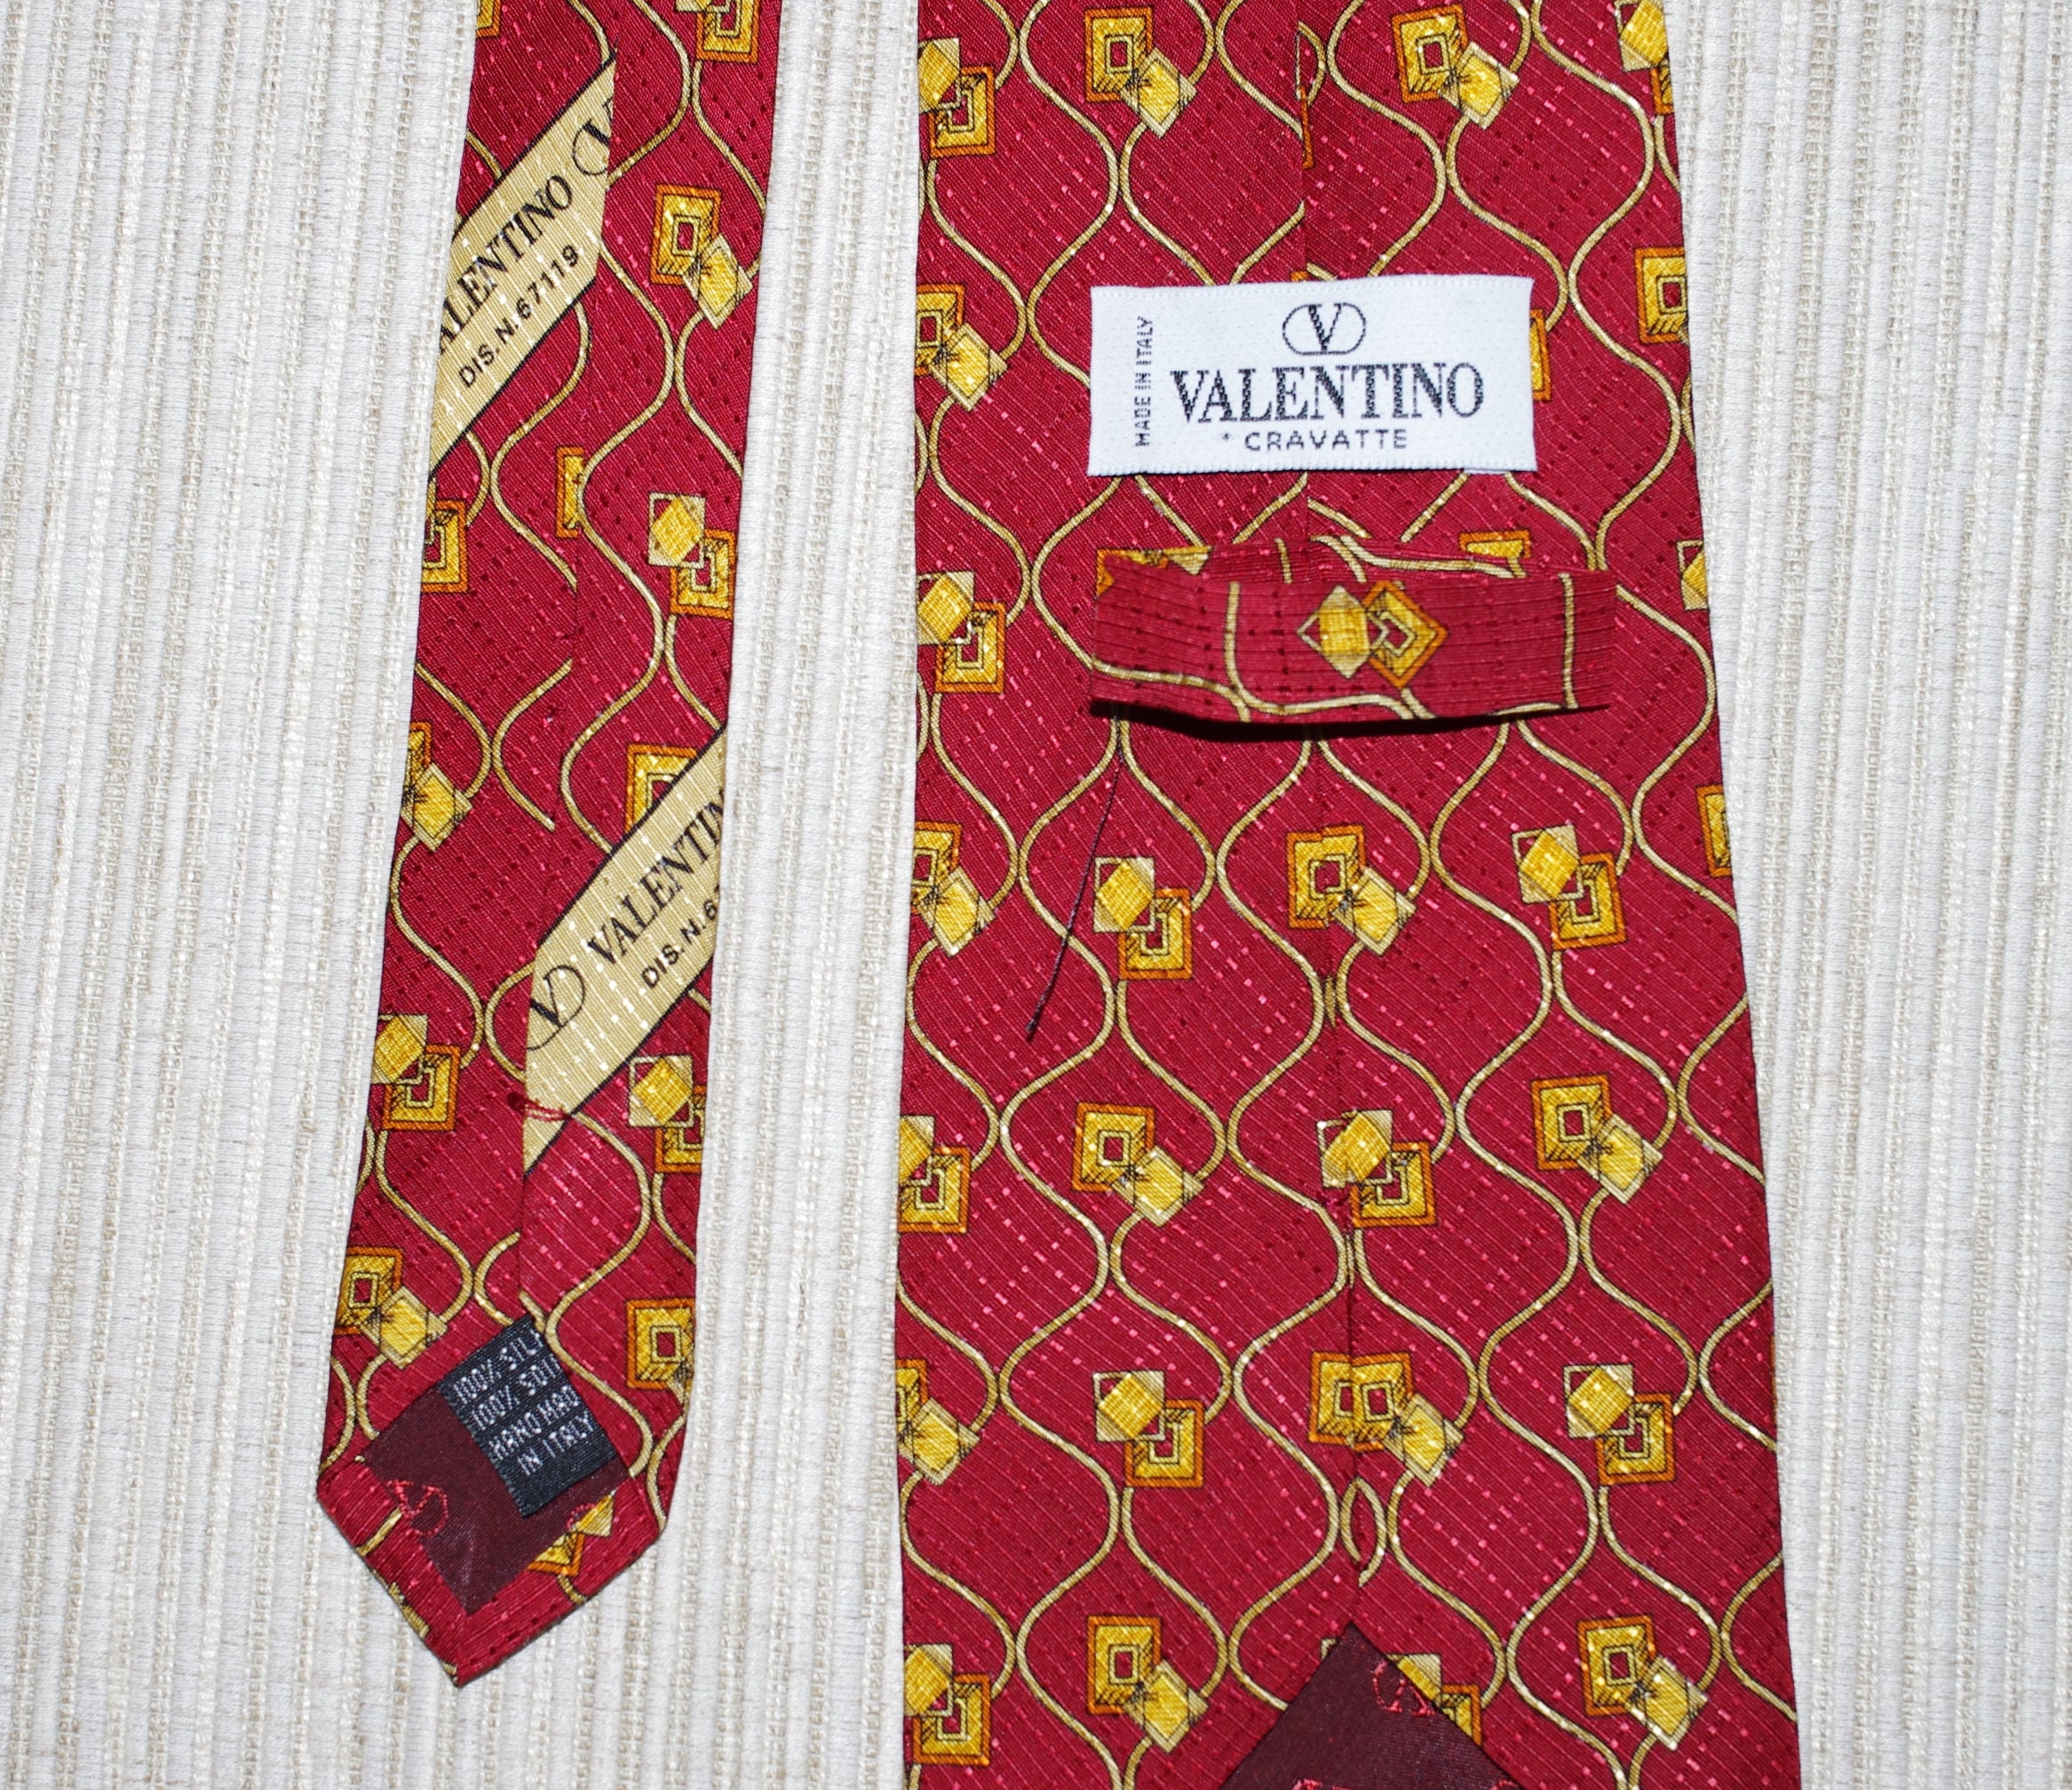 Valentino Cravatte Silk Red Gold Print Vintage Necktie - Etsy